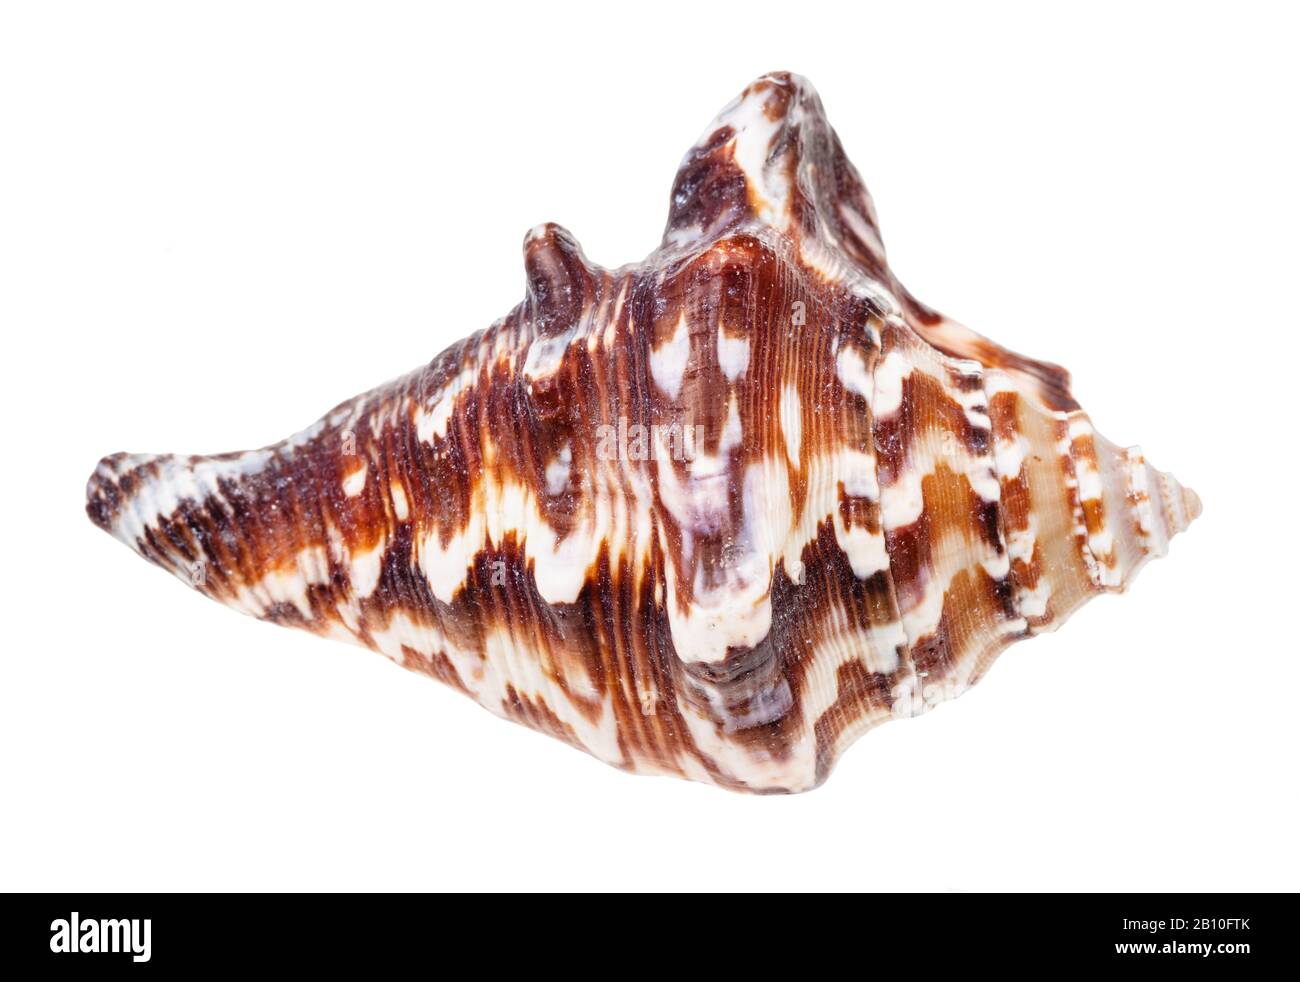 guscio marrone scuro del mollusco muricidae isolato su sfondo bianco Foto Stock